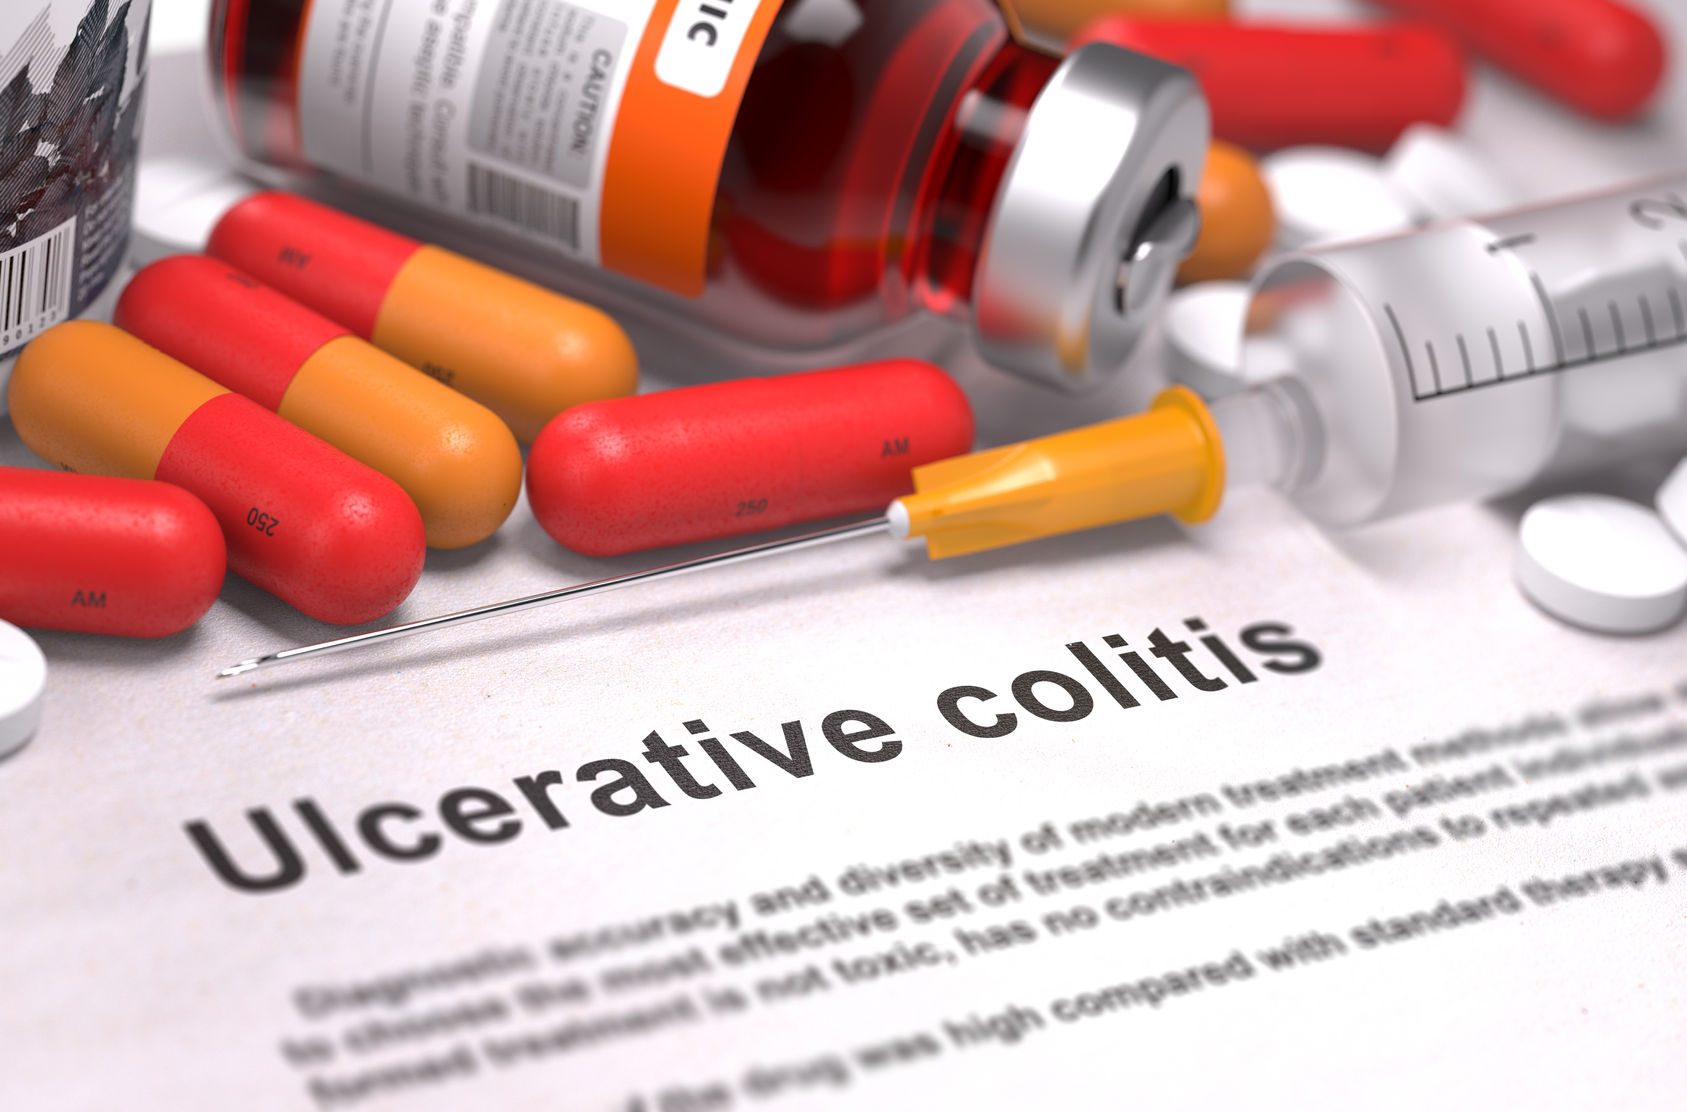 Ulcerative Colitis Recruitment